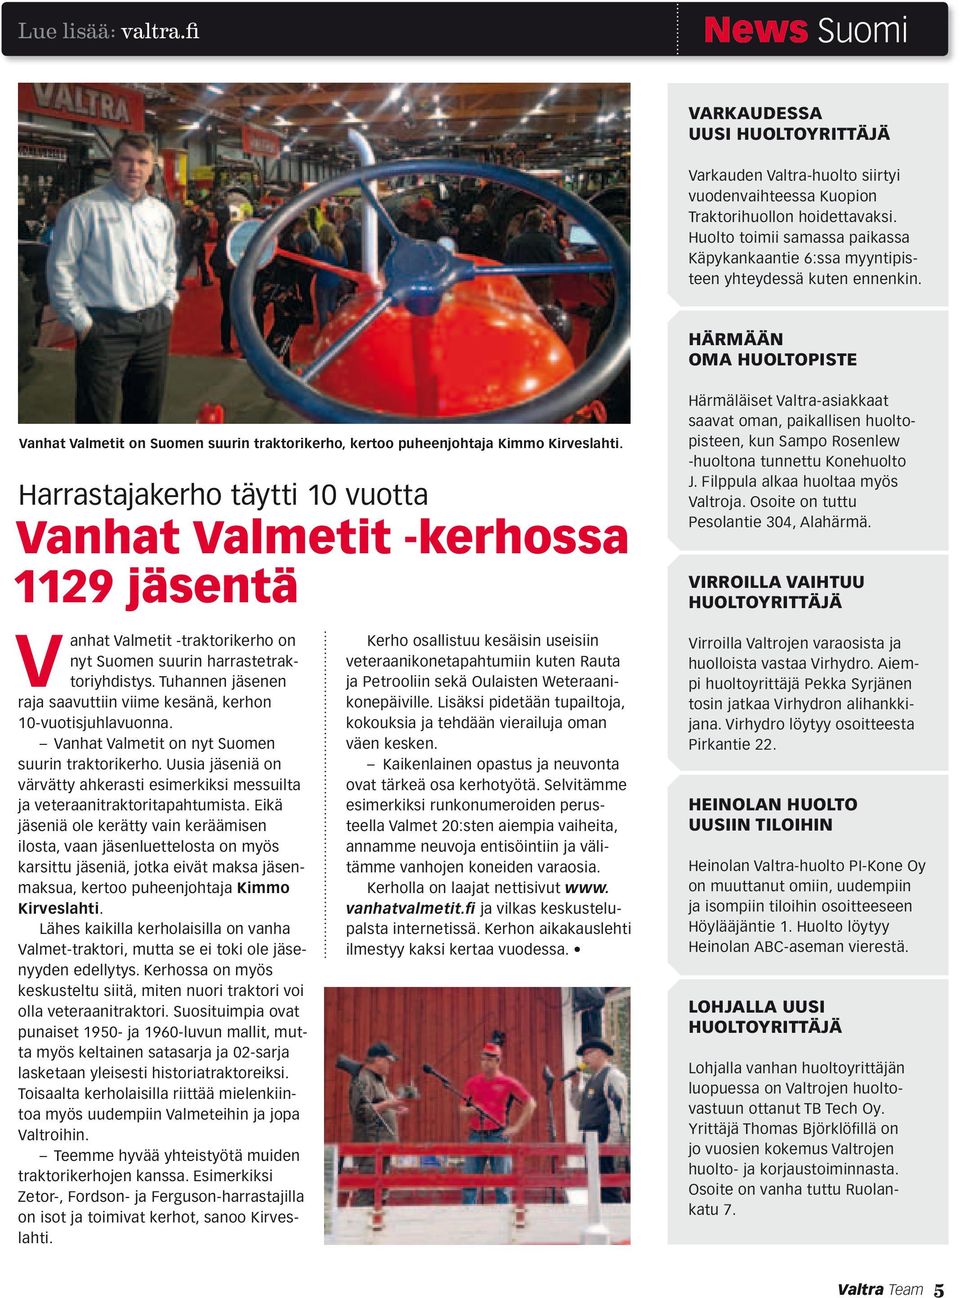 Härmään oma huoltopiste Vanhat Valmetit on Suomen suurin traktorikerho, kertoo puheenjohtaja Kimmo Kirveslahti.